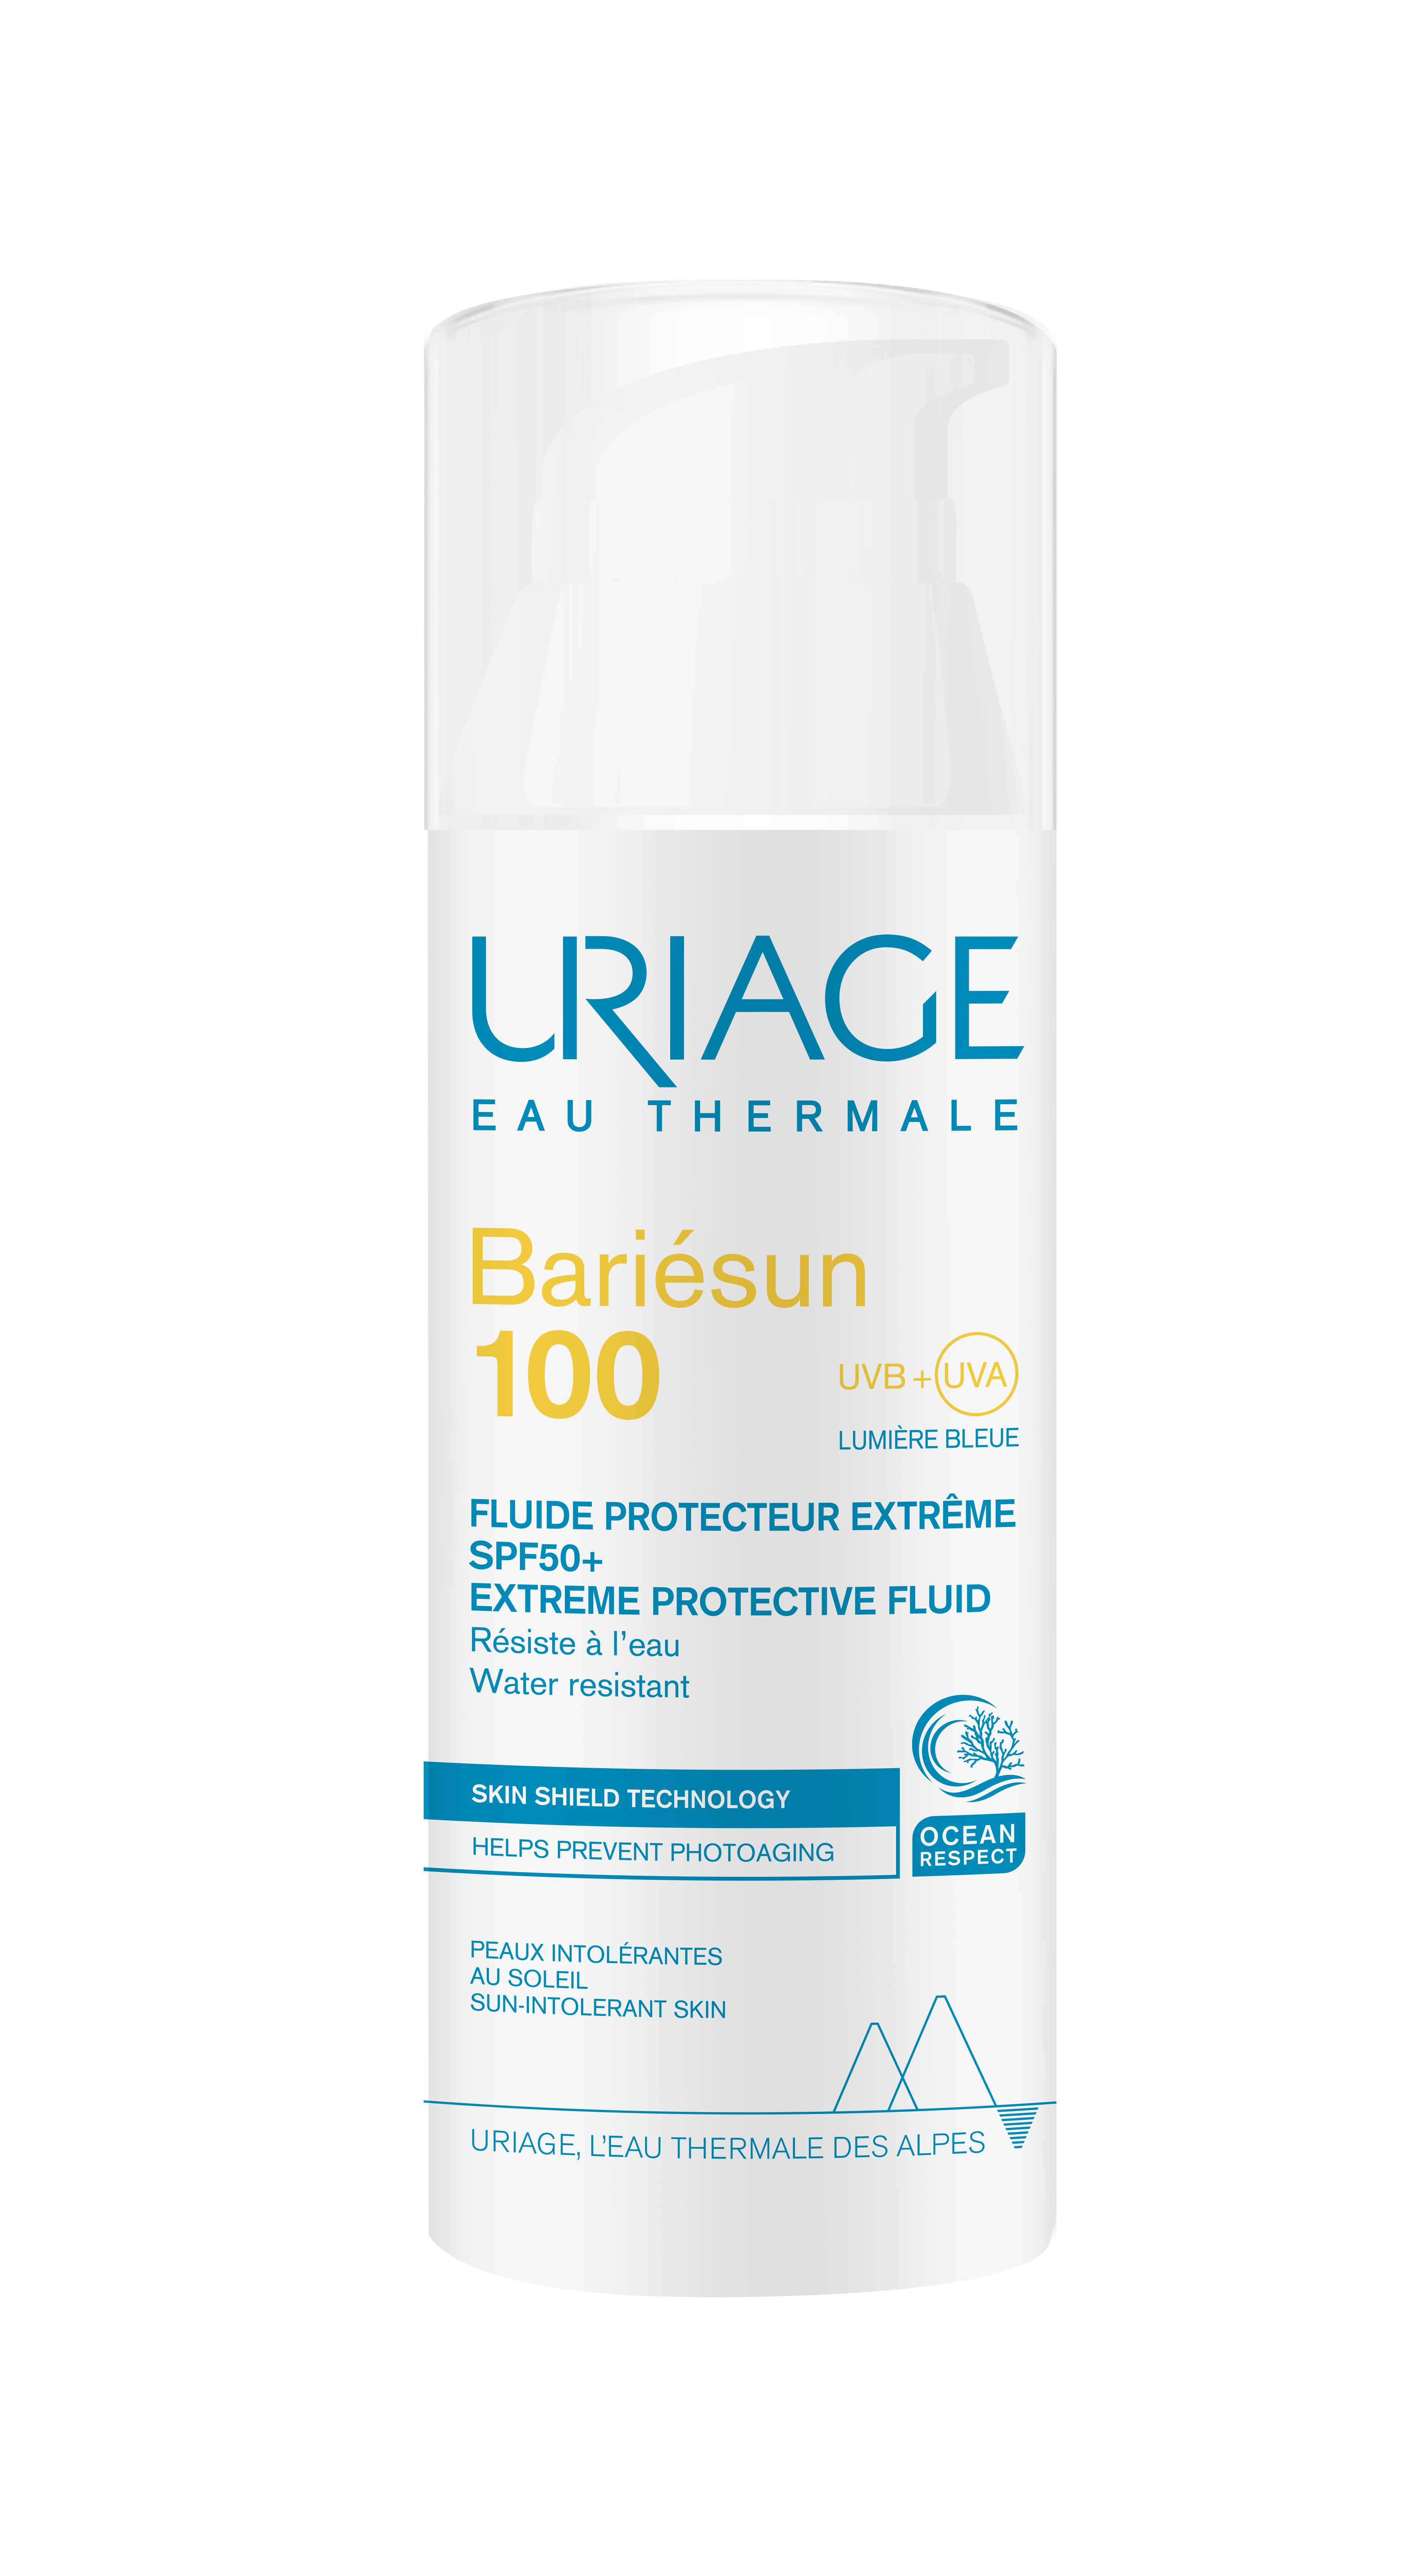 URIAGE BARIÉSUN100 protective fluid SPF50